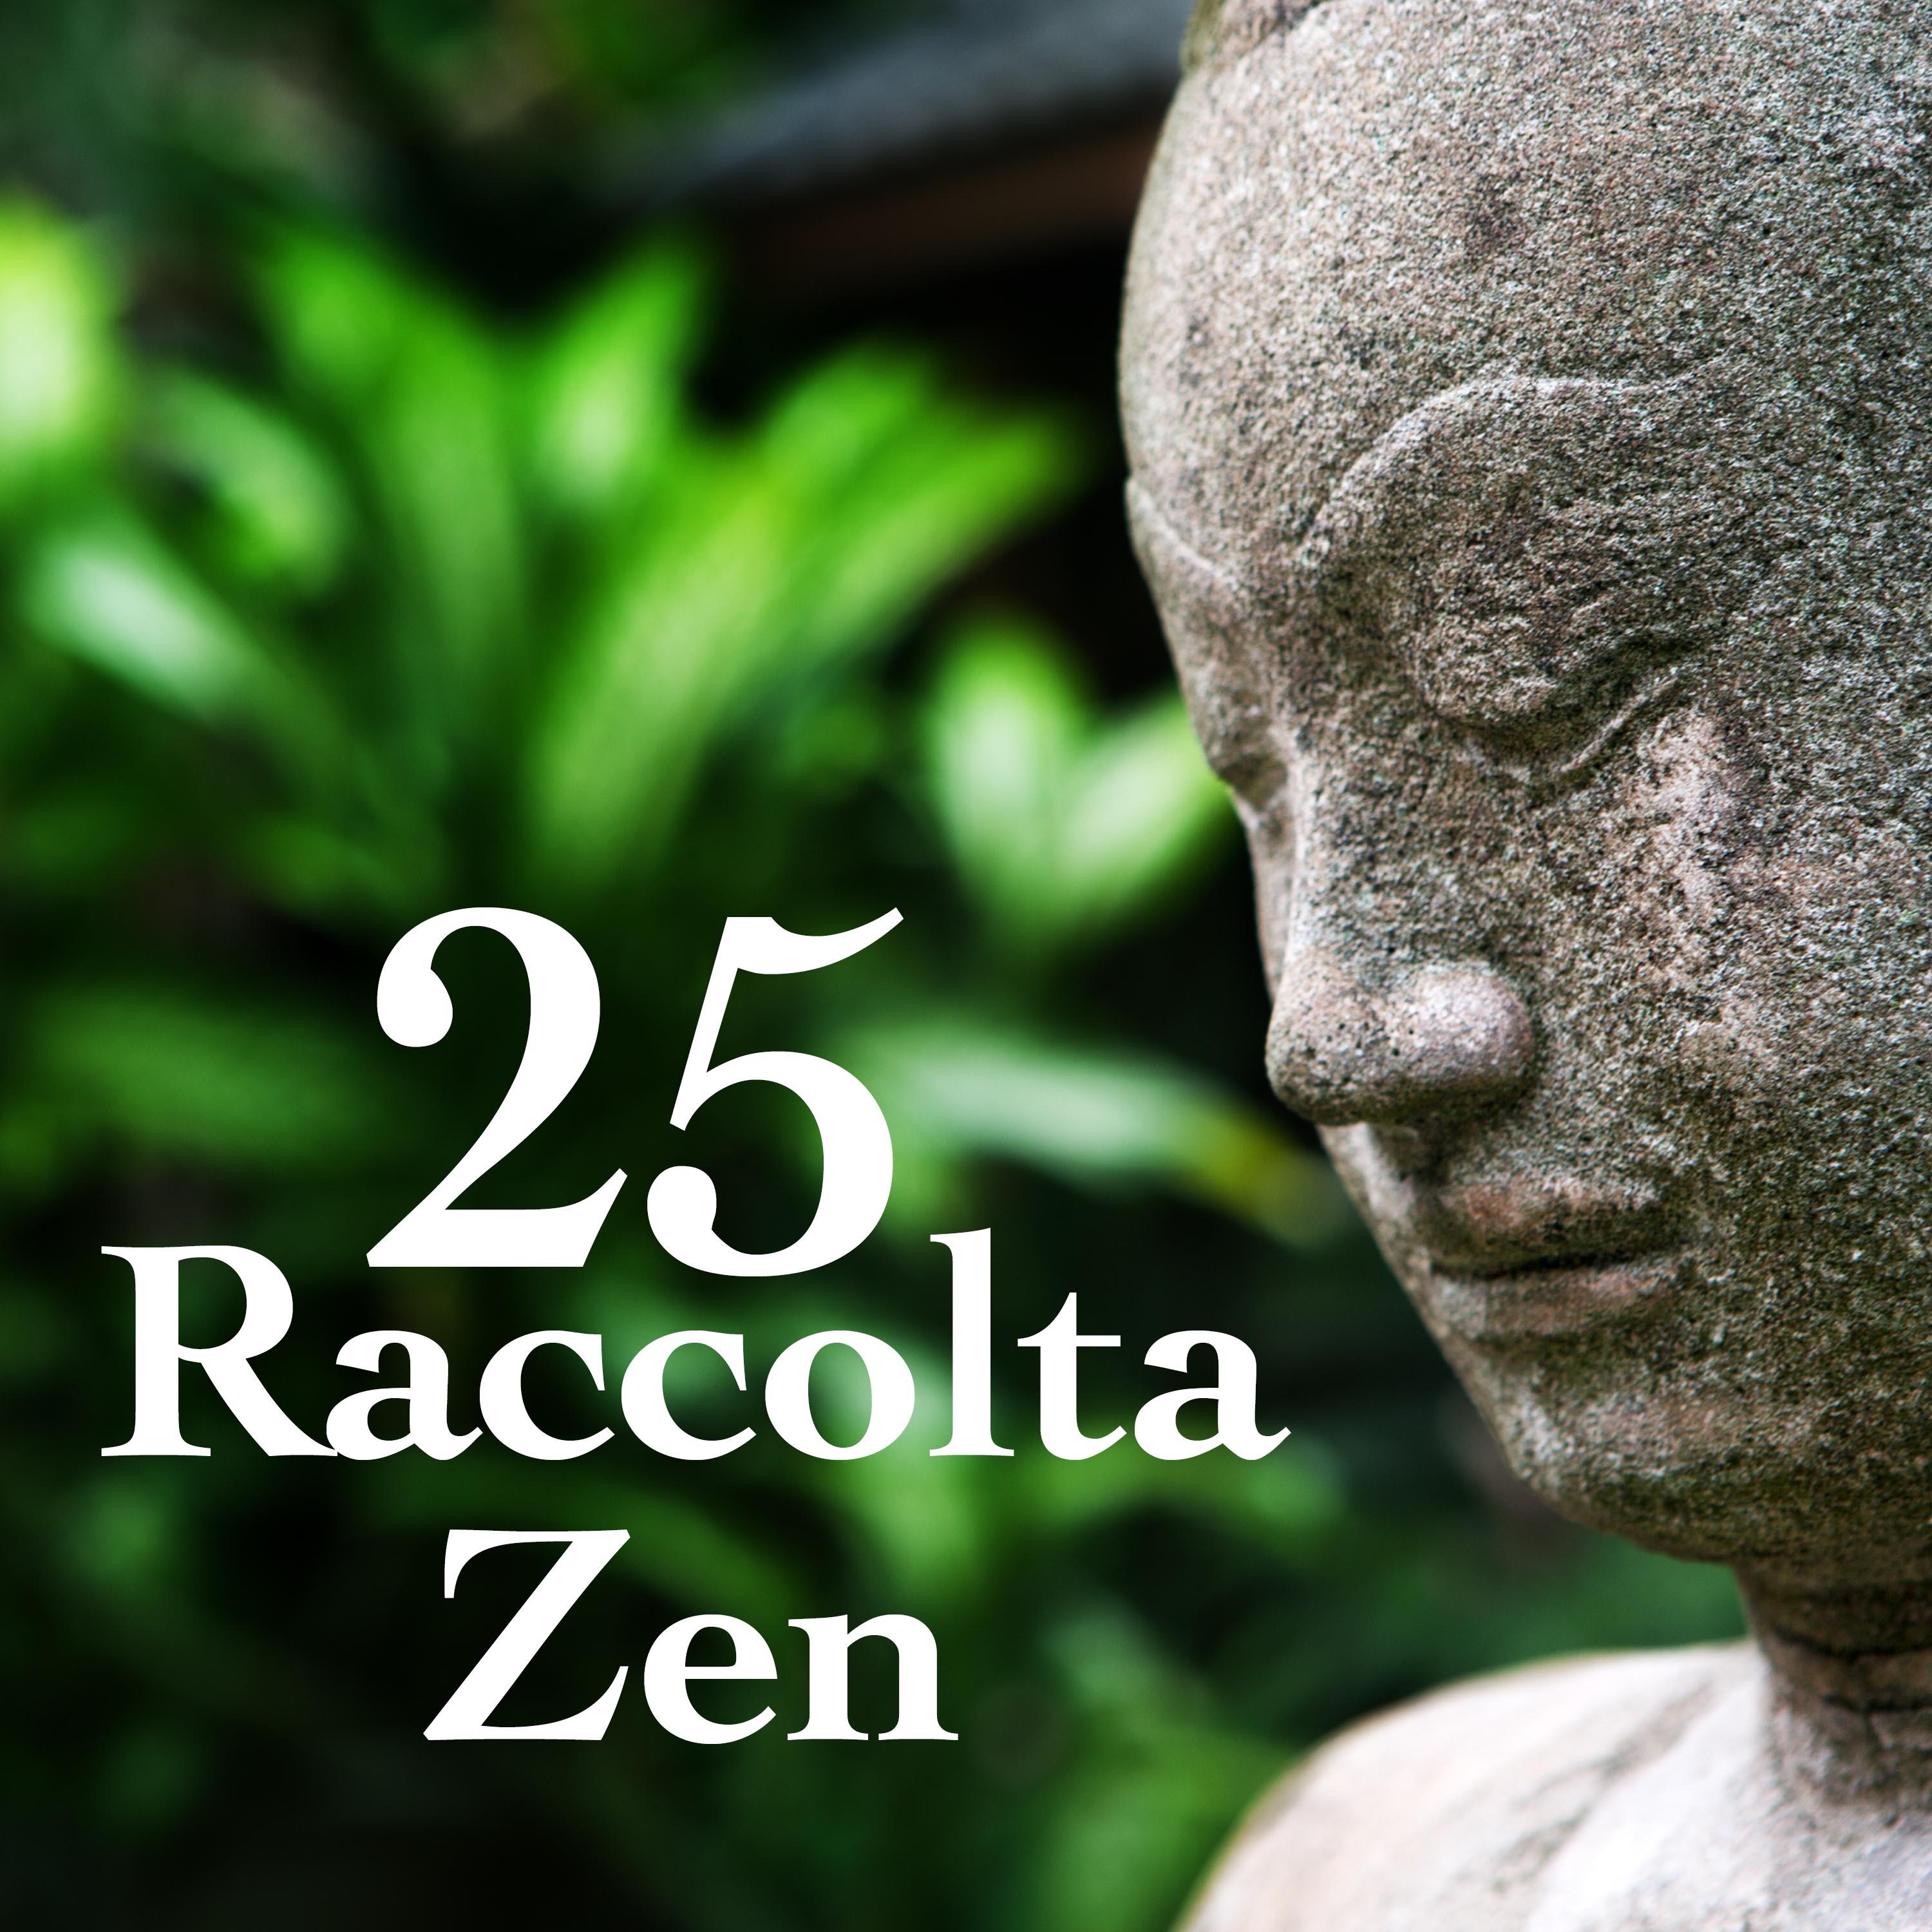 25 Raccolta Zen: Musica Zen Rilassante per la Meditazione, Rilassamento, Yoga